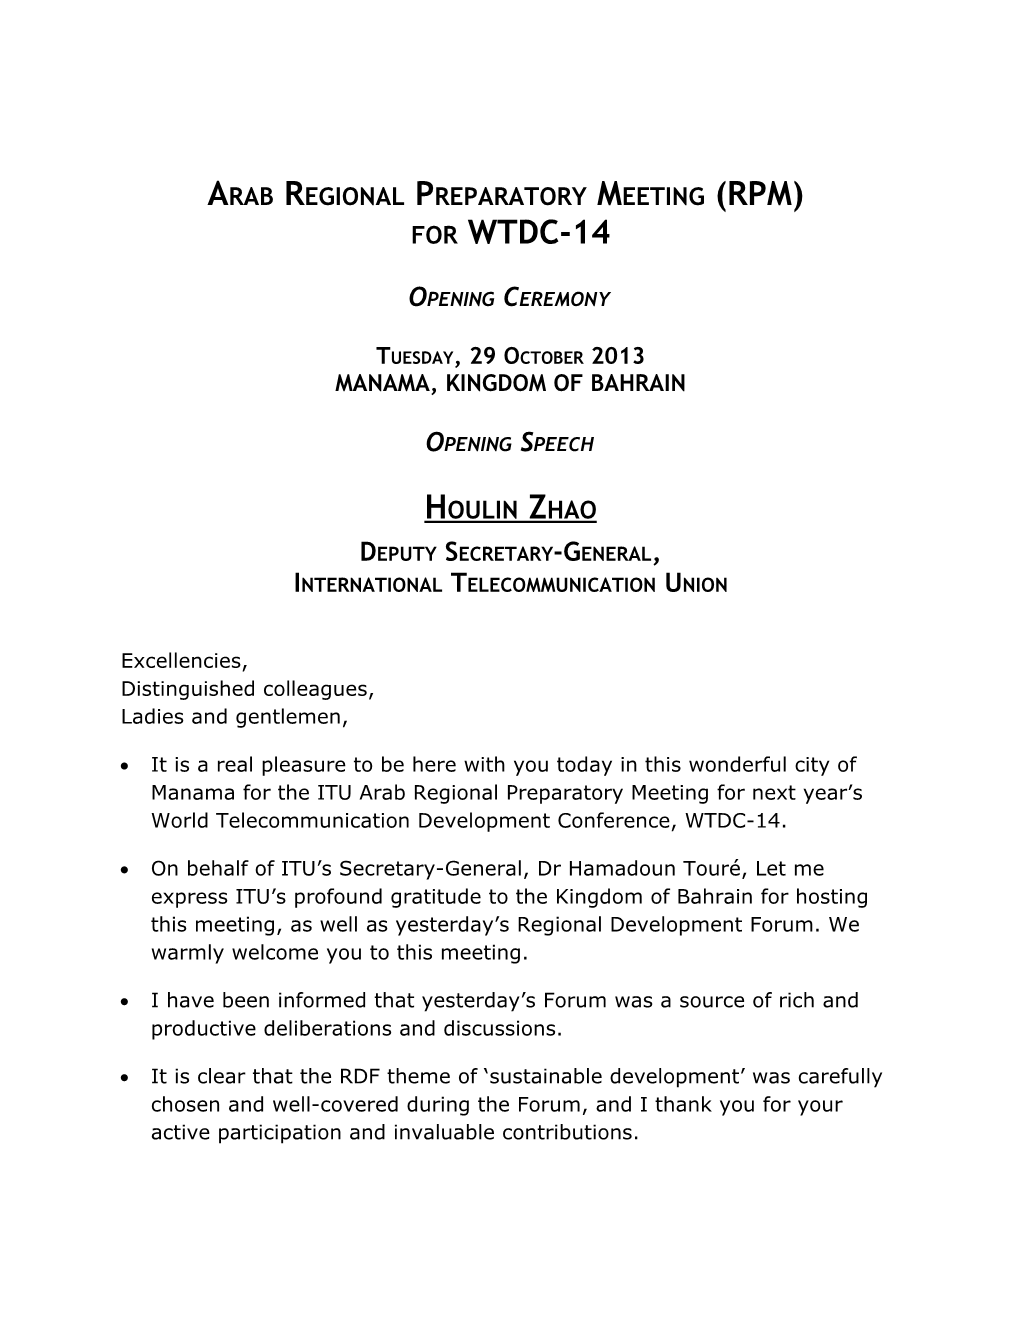 Arab Regional Preparatory Meeting (RPM) for WTDC-14